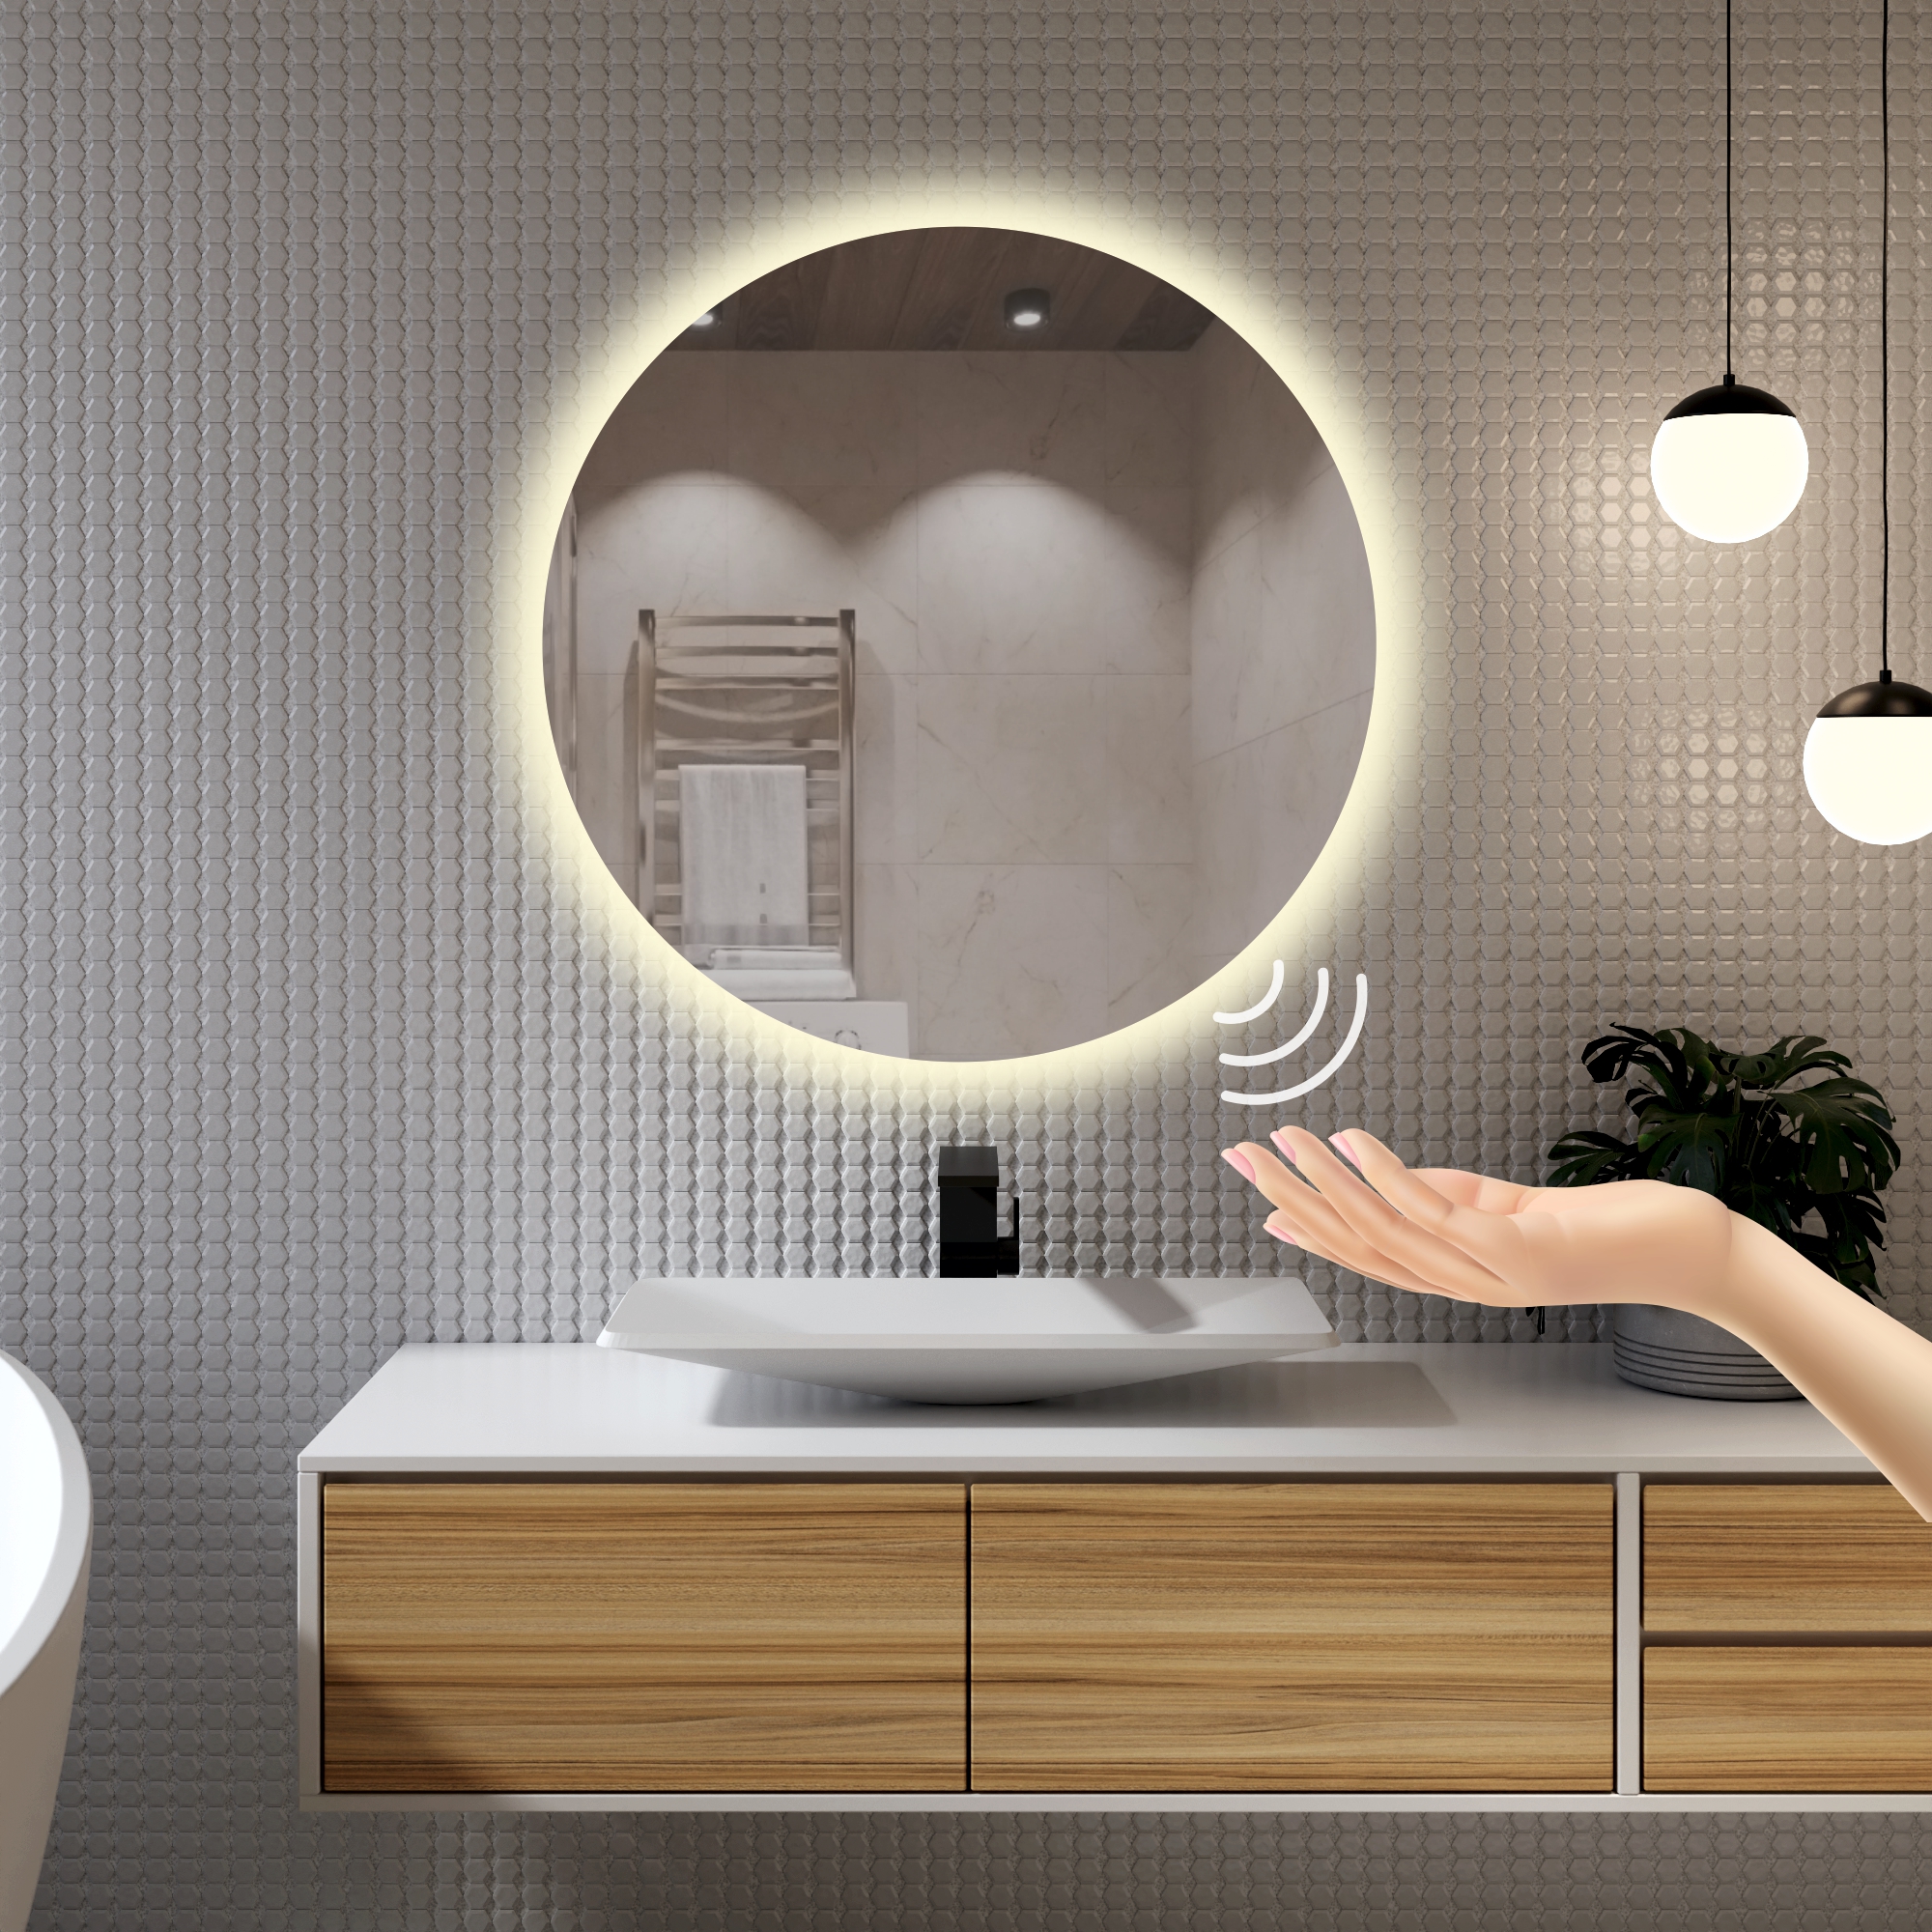 Зеркало для ванной Alfa Mirrors с дневной подсветкой 4200К круглое 60см, арт. Na-6Vzd зеркало настенное круглое 80 см соло